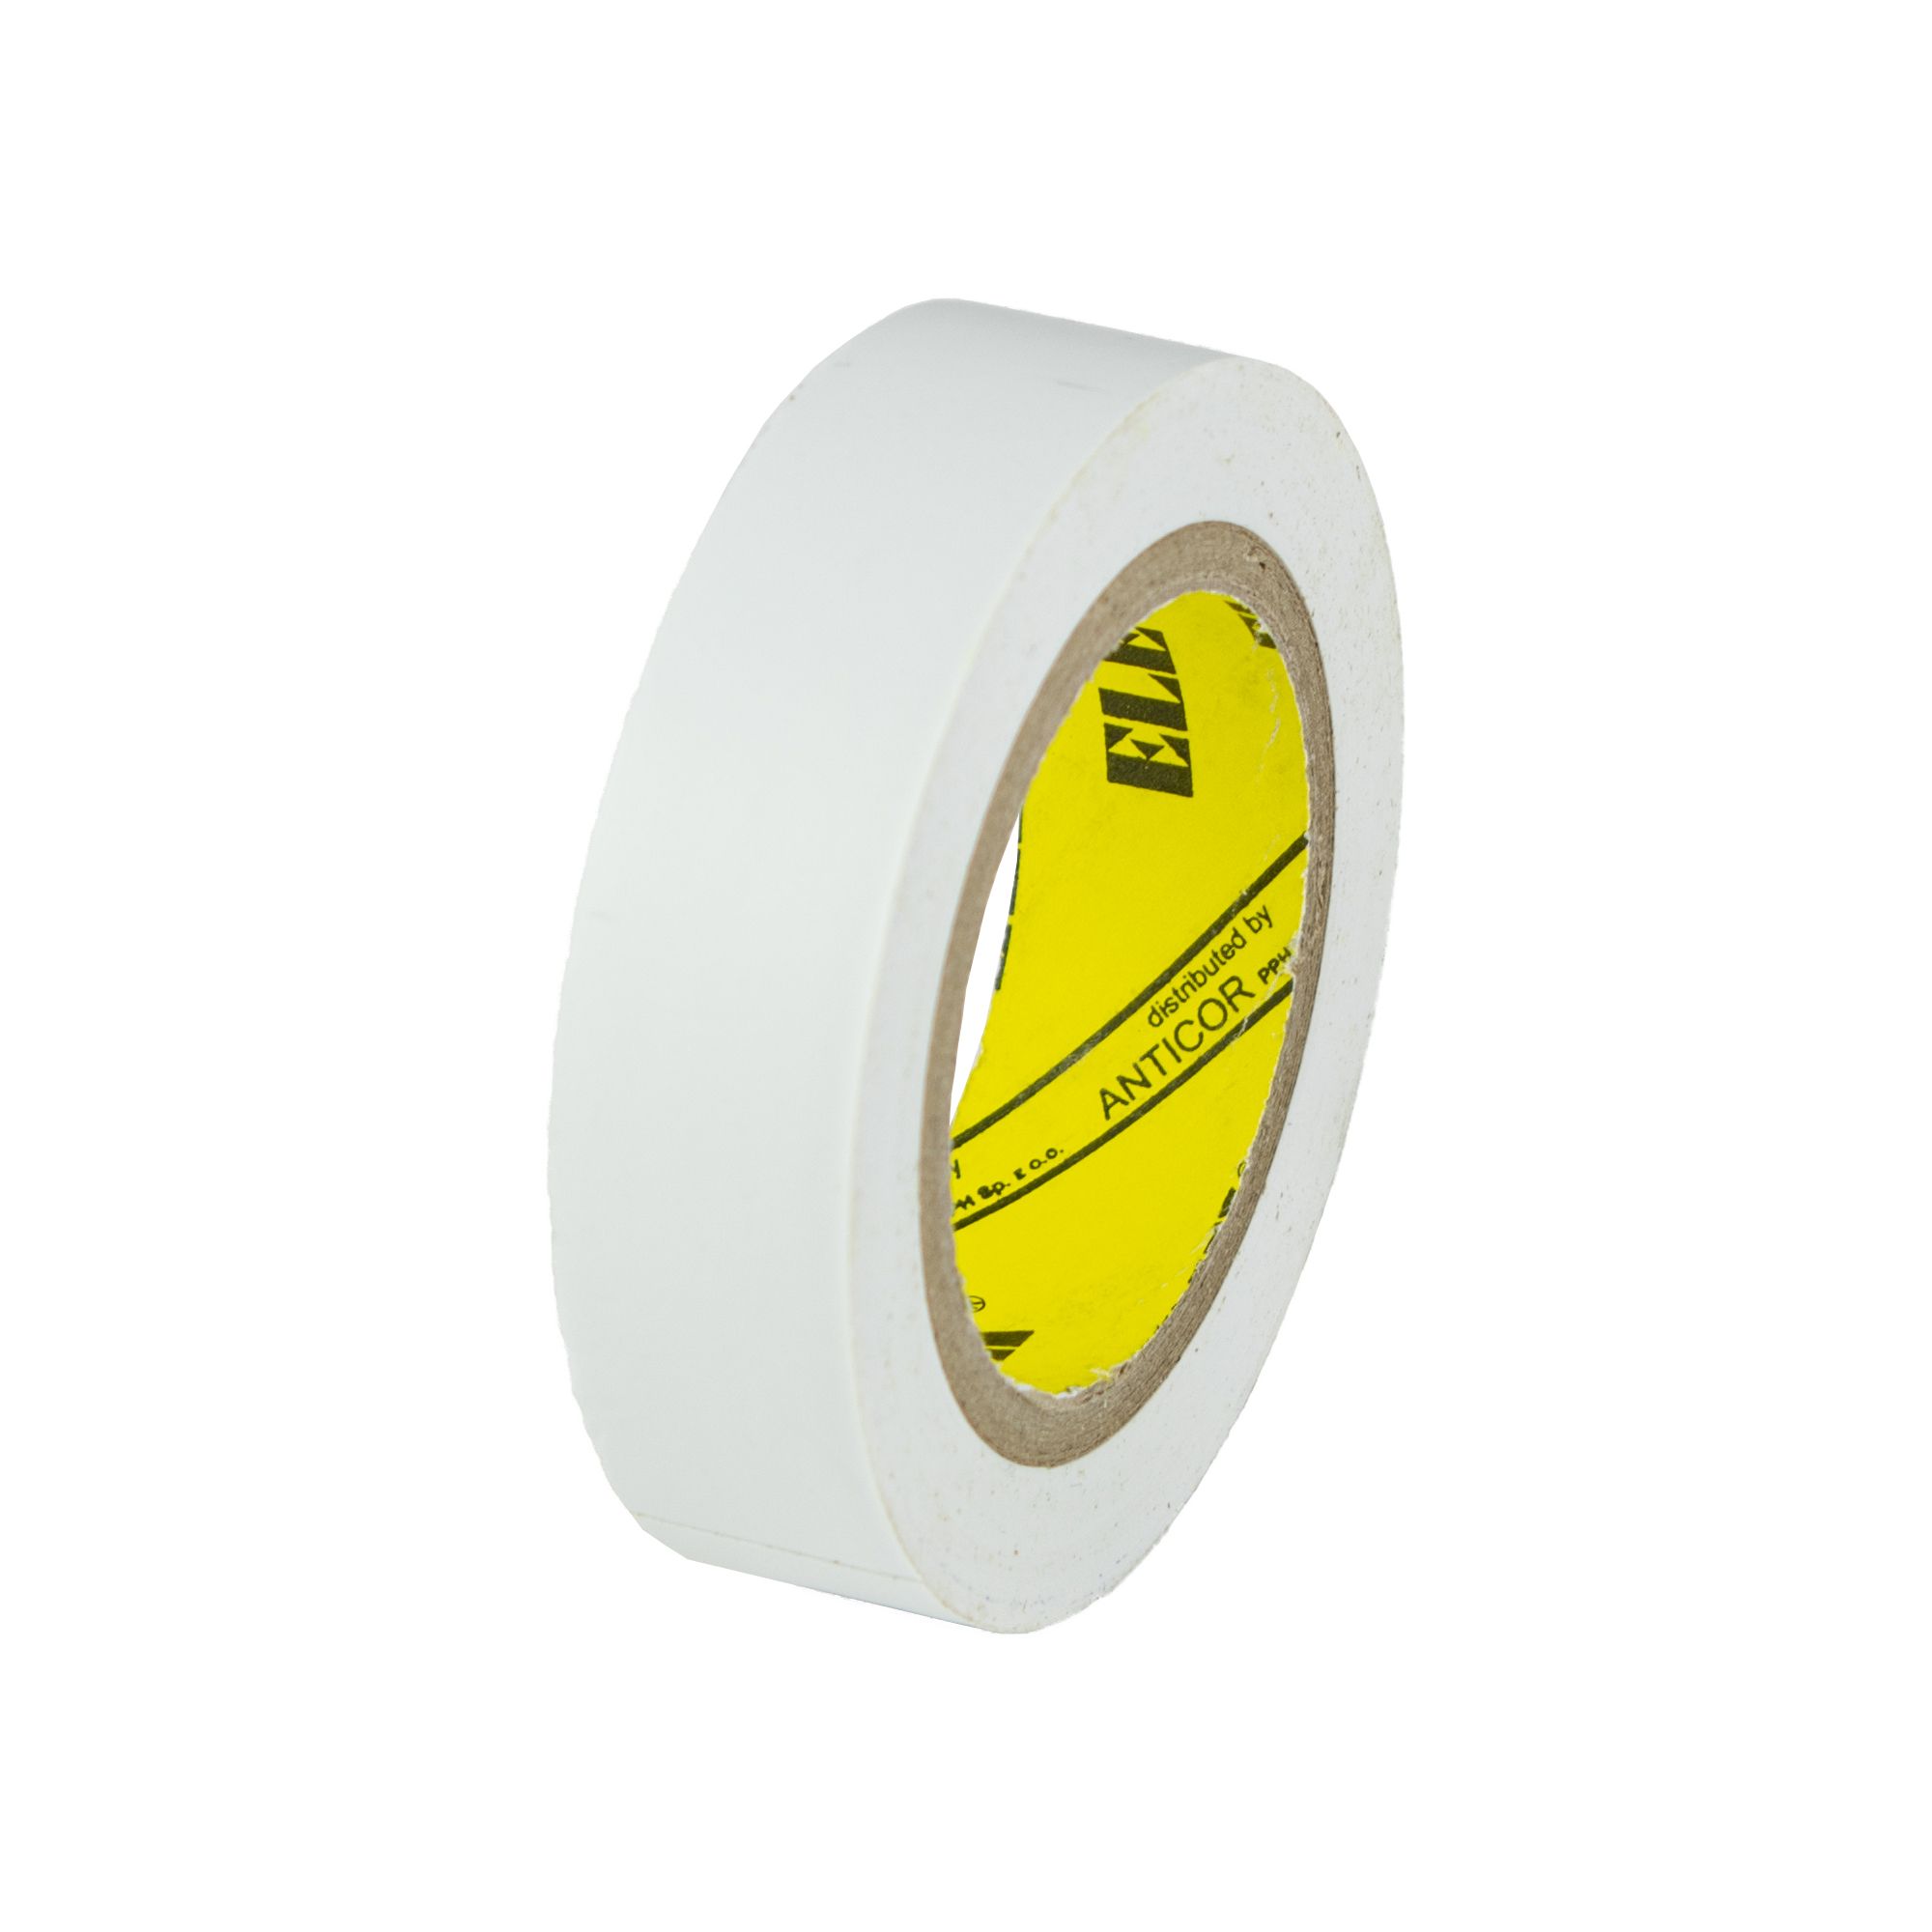 Izolační páska PVC 15mm / 10m, bílá 0.028000 Kg GIGA Sklad20 V9511 77